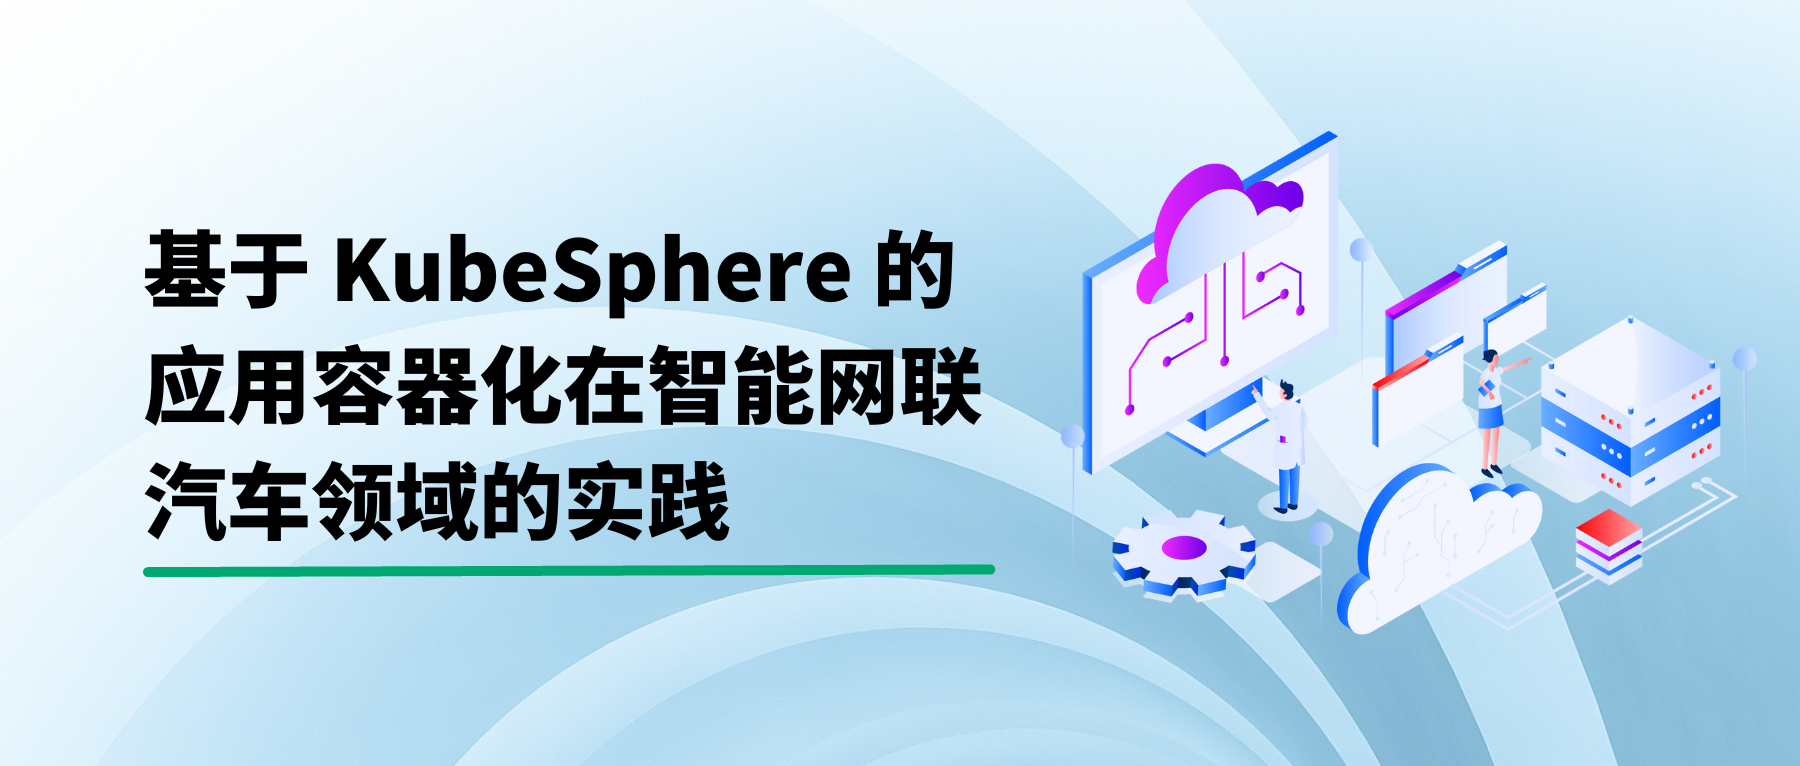 基于 KubeSphere 的应用容器化在智能网联汽车领域的实践